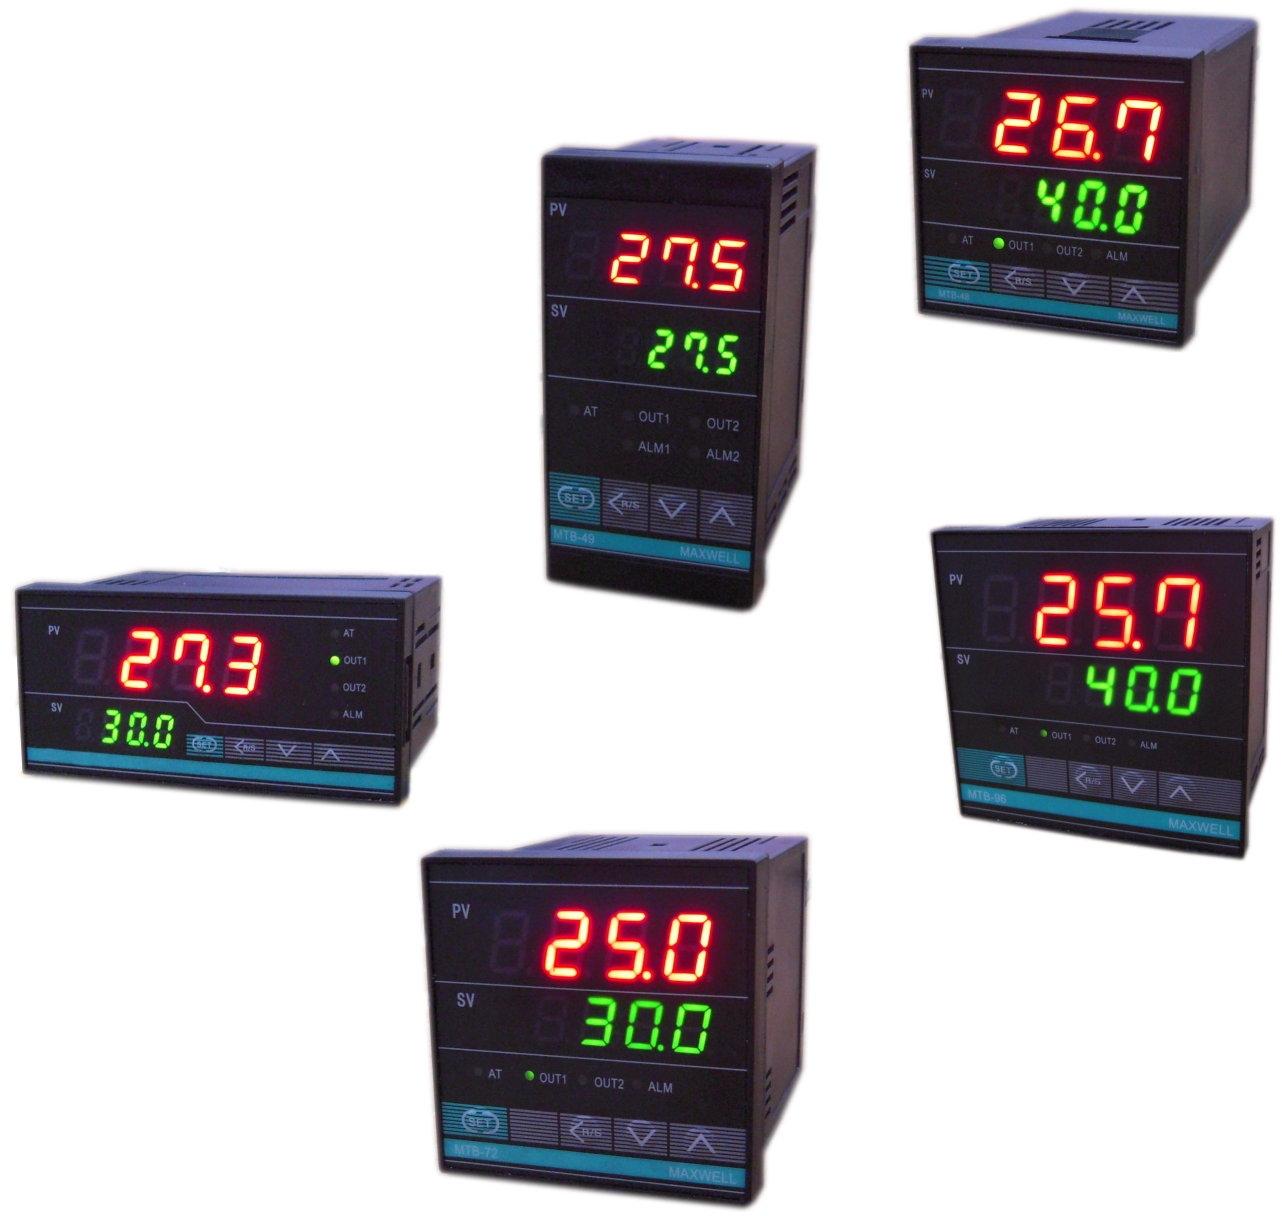 pid temperature controller manufacturers